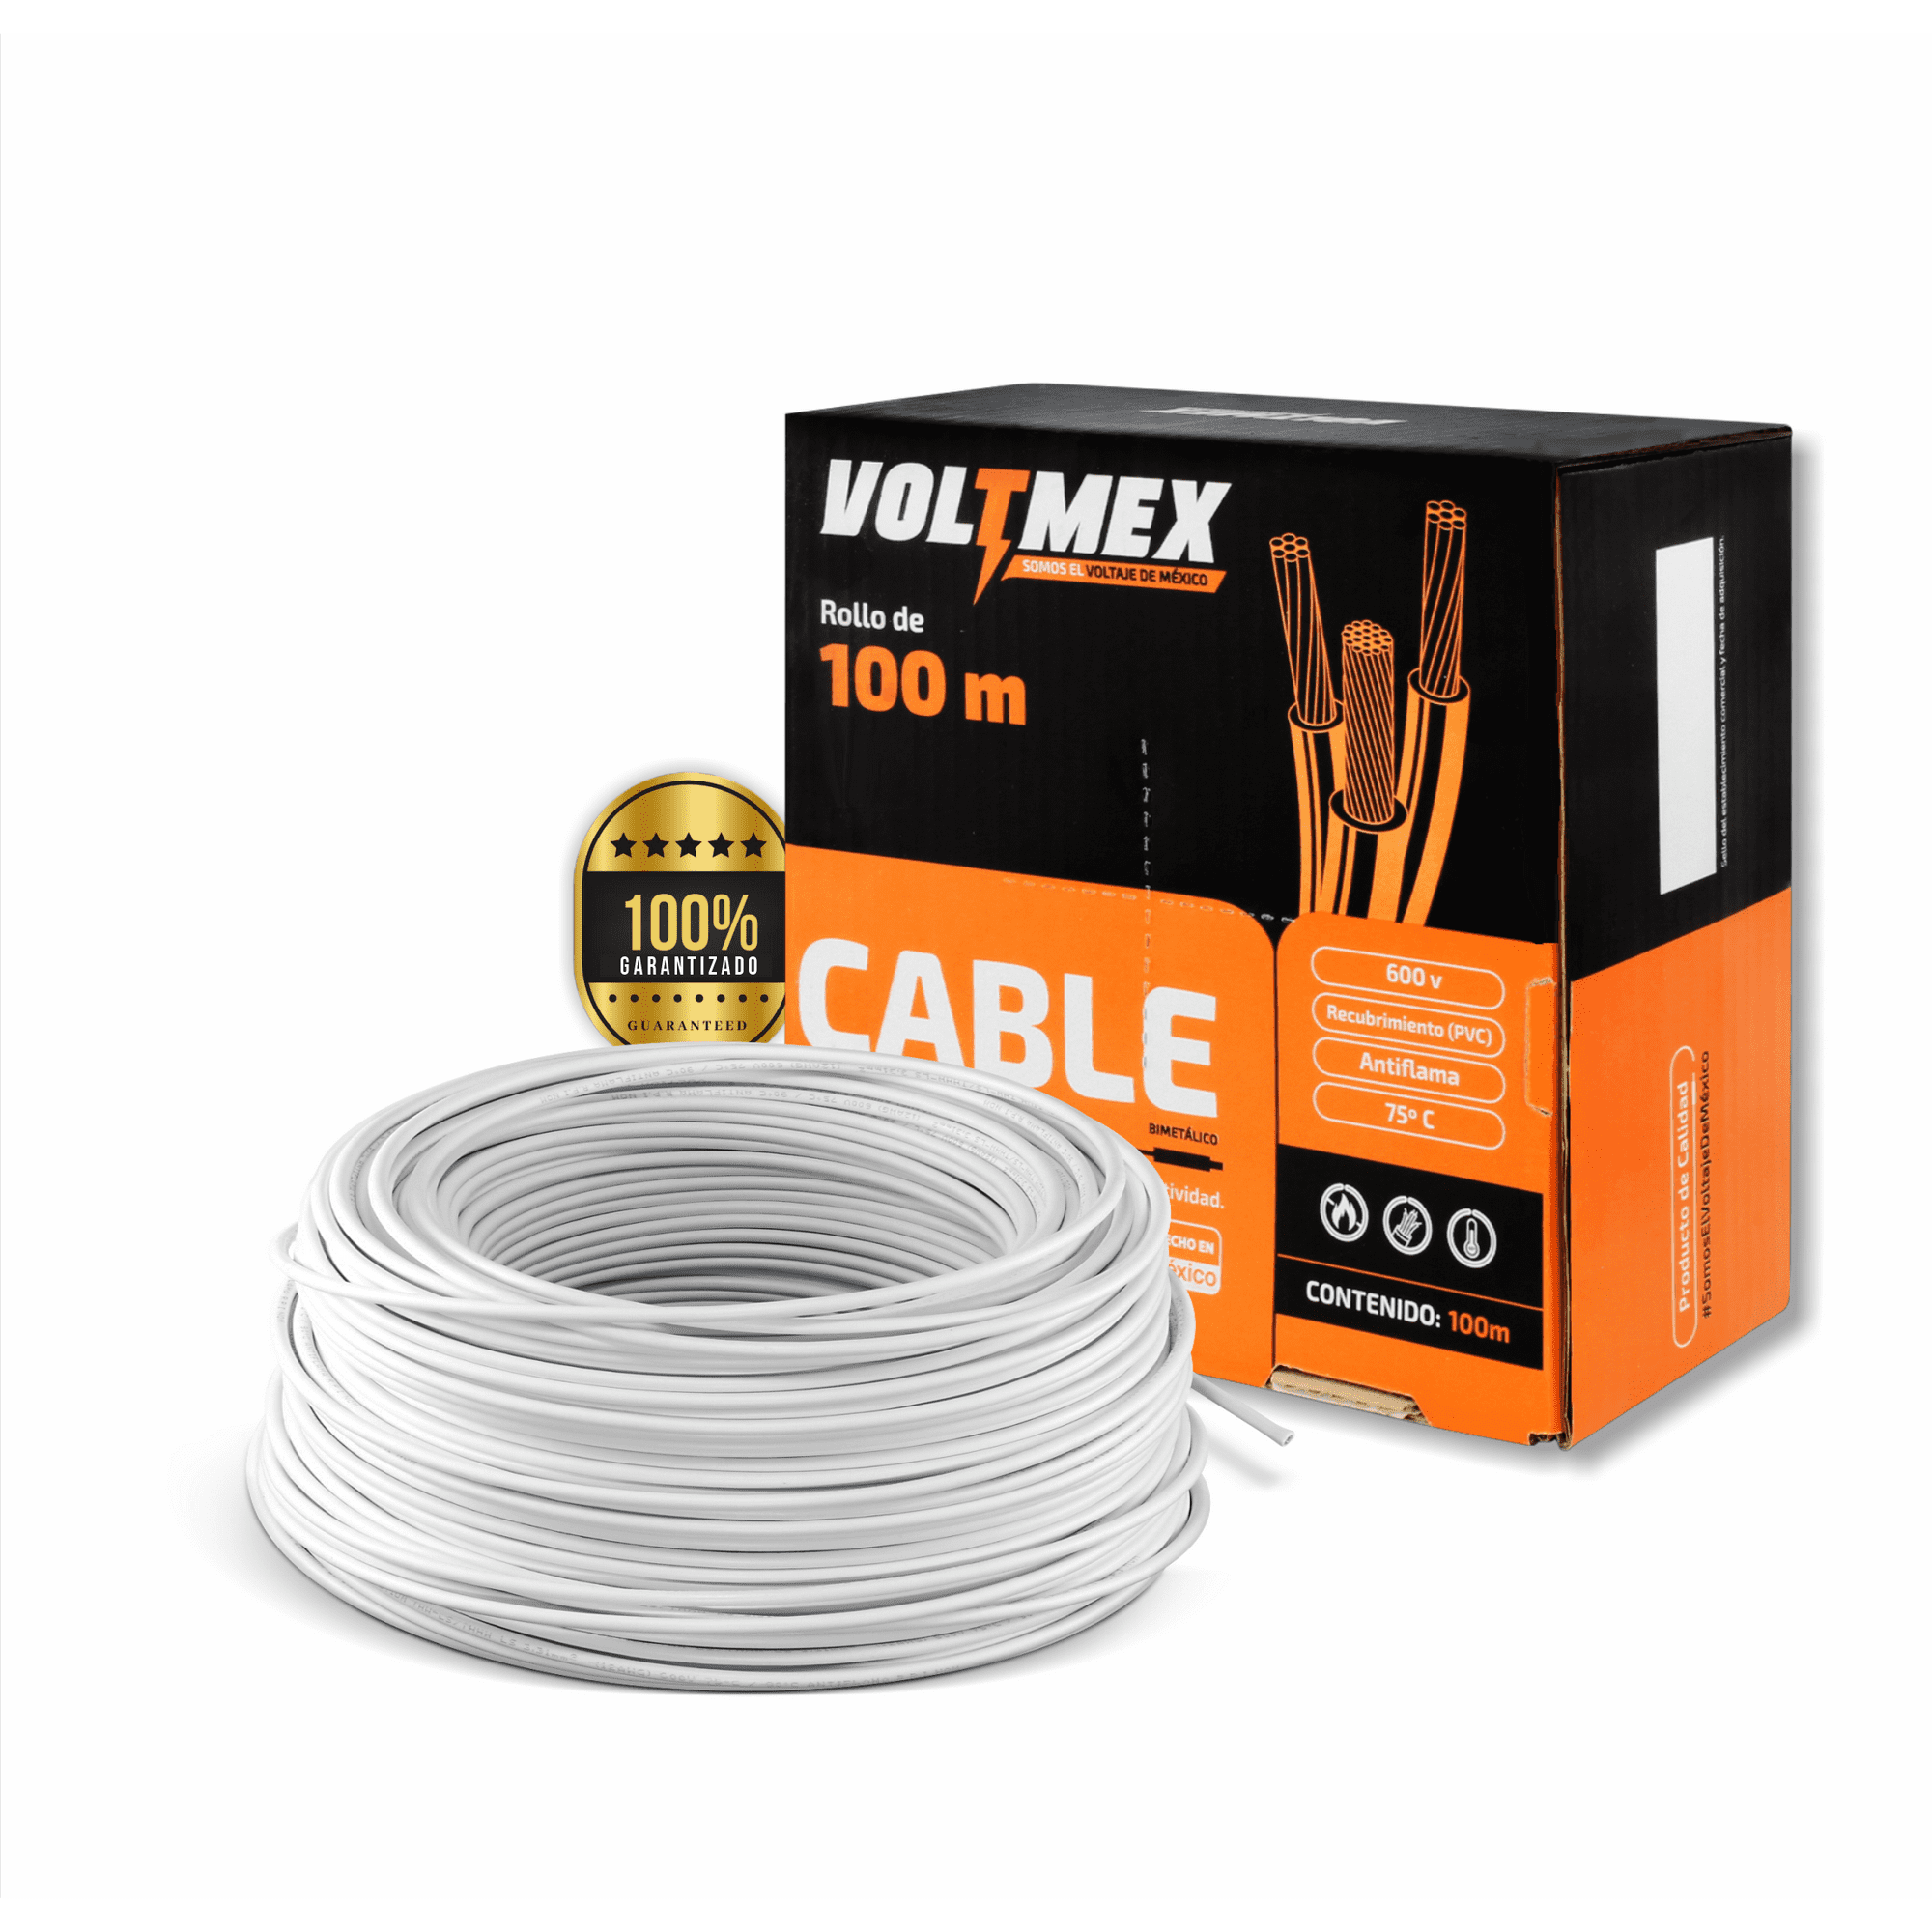 Cable Eléctrico Voltium Thw-ls / Thhw-ls, Calibre 14 Blanco 100% Cobre 100m